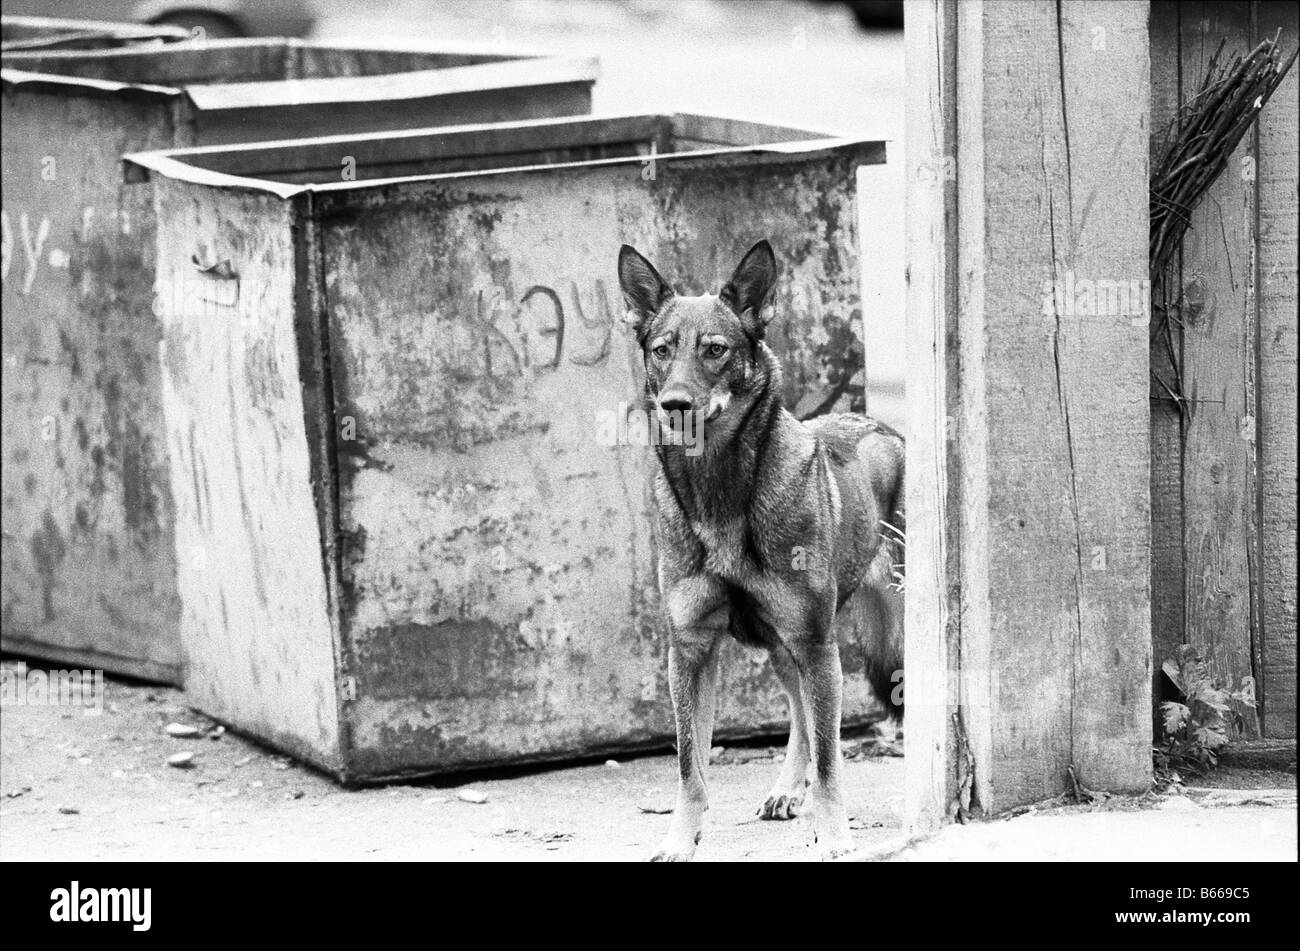 stray dog near the refuse bin Stock Photo